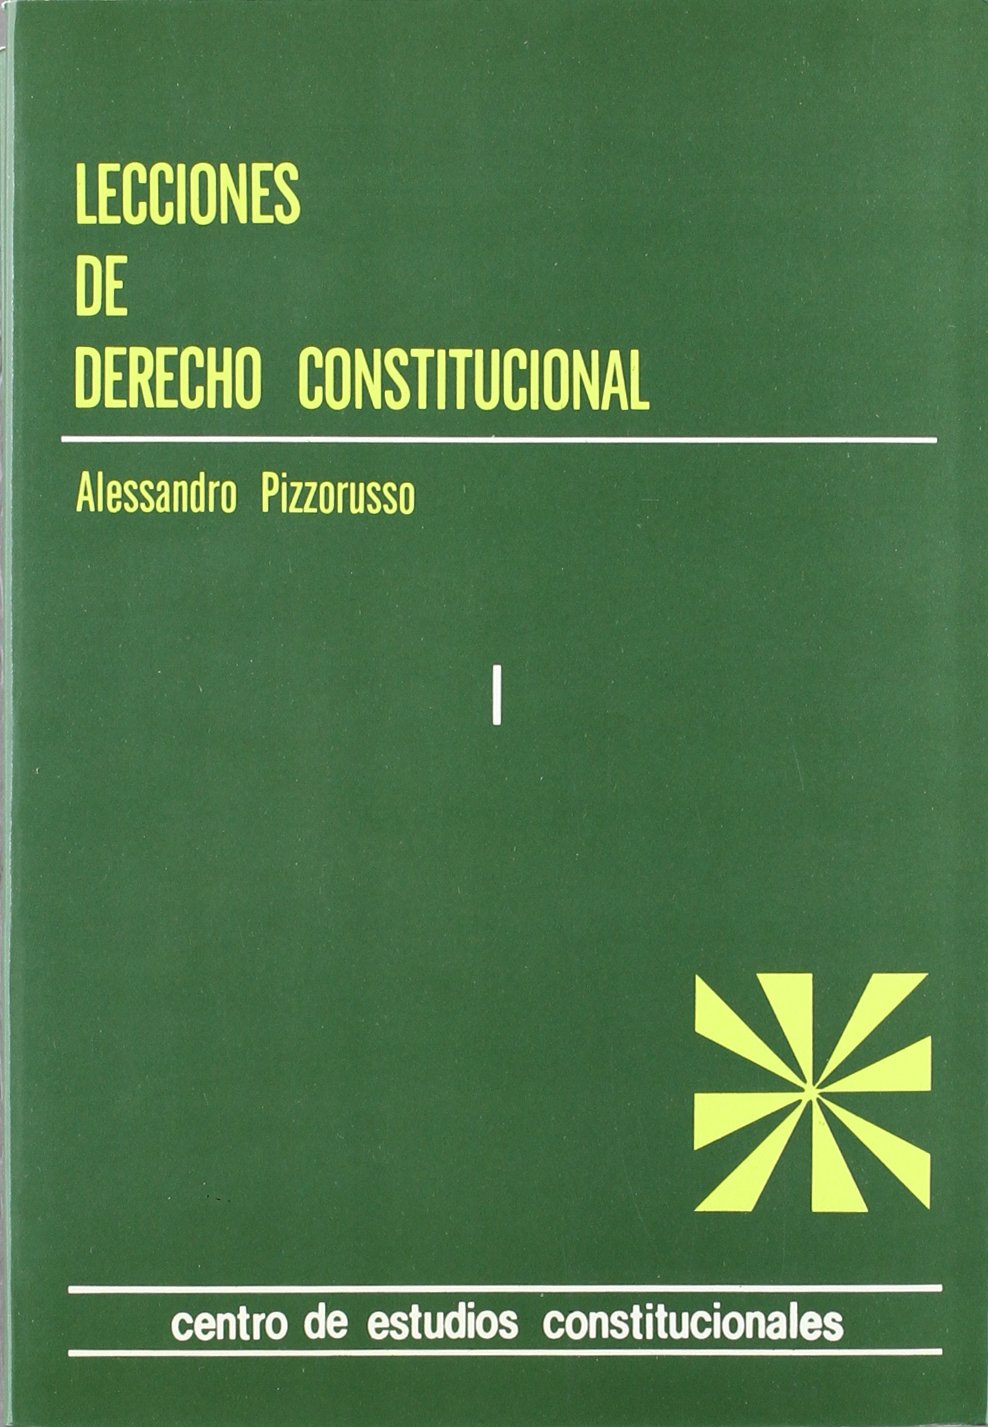 Lecciones de Derecho constitucional